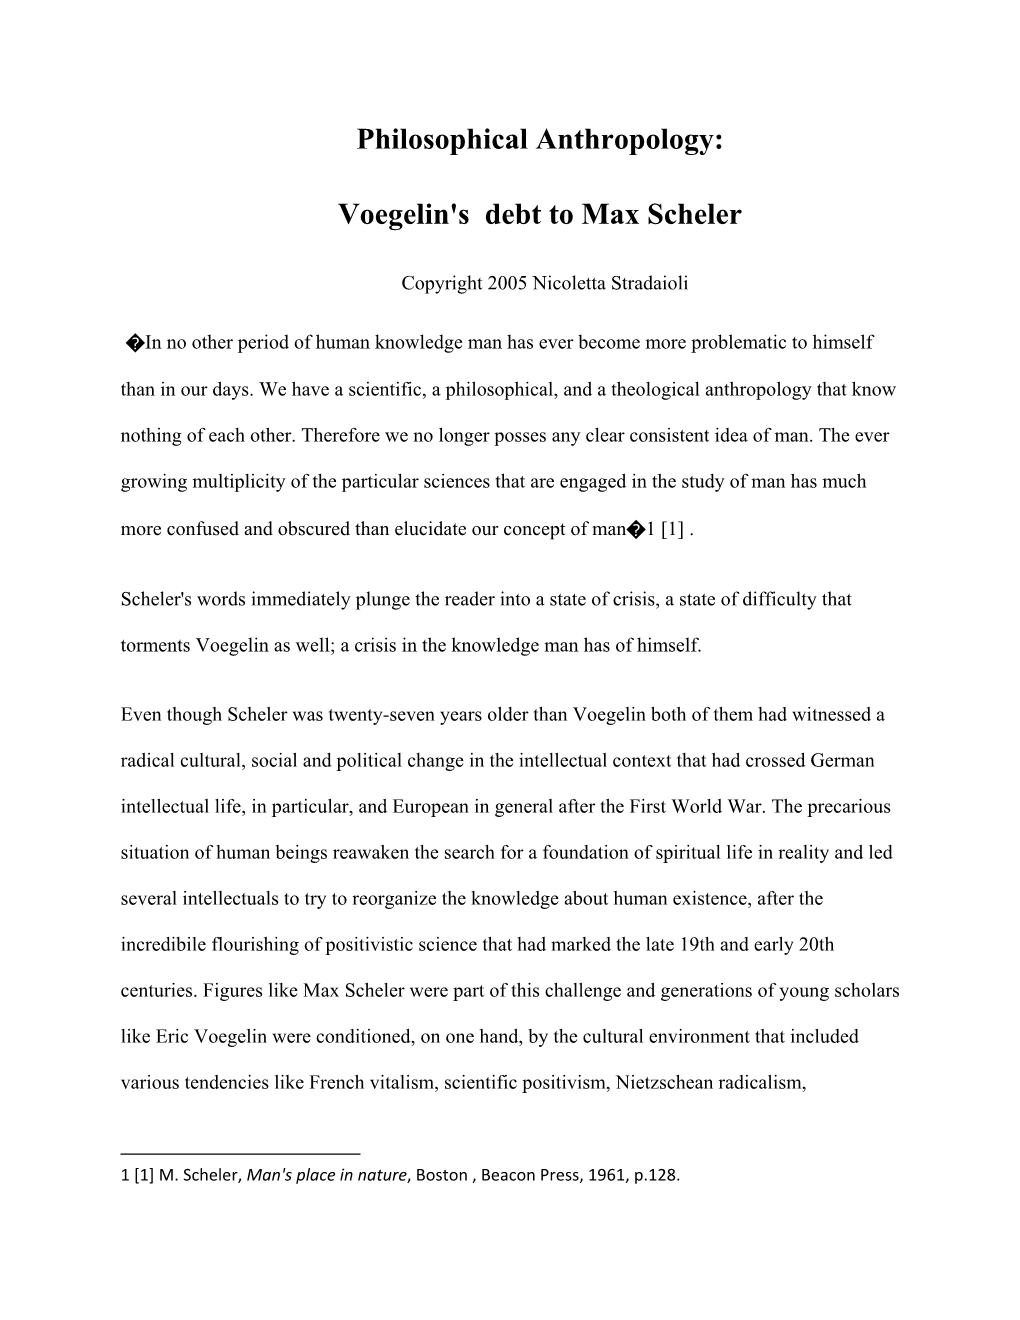 Philosophical Anthropology: Voegelin's Debt to Max Scheler